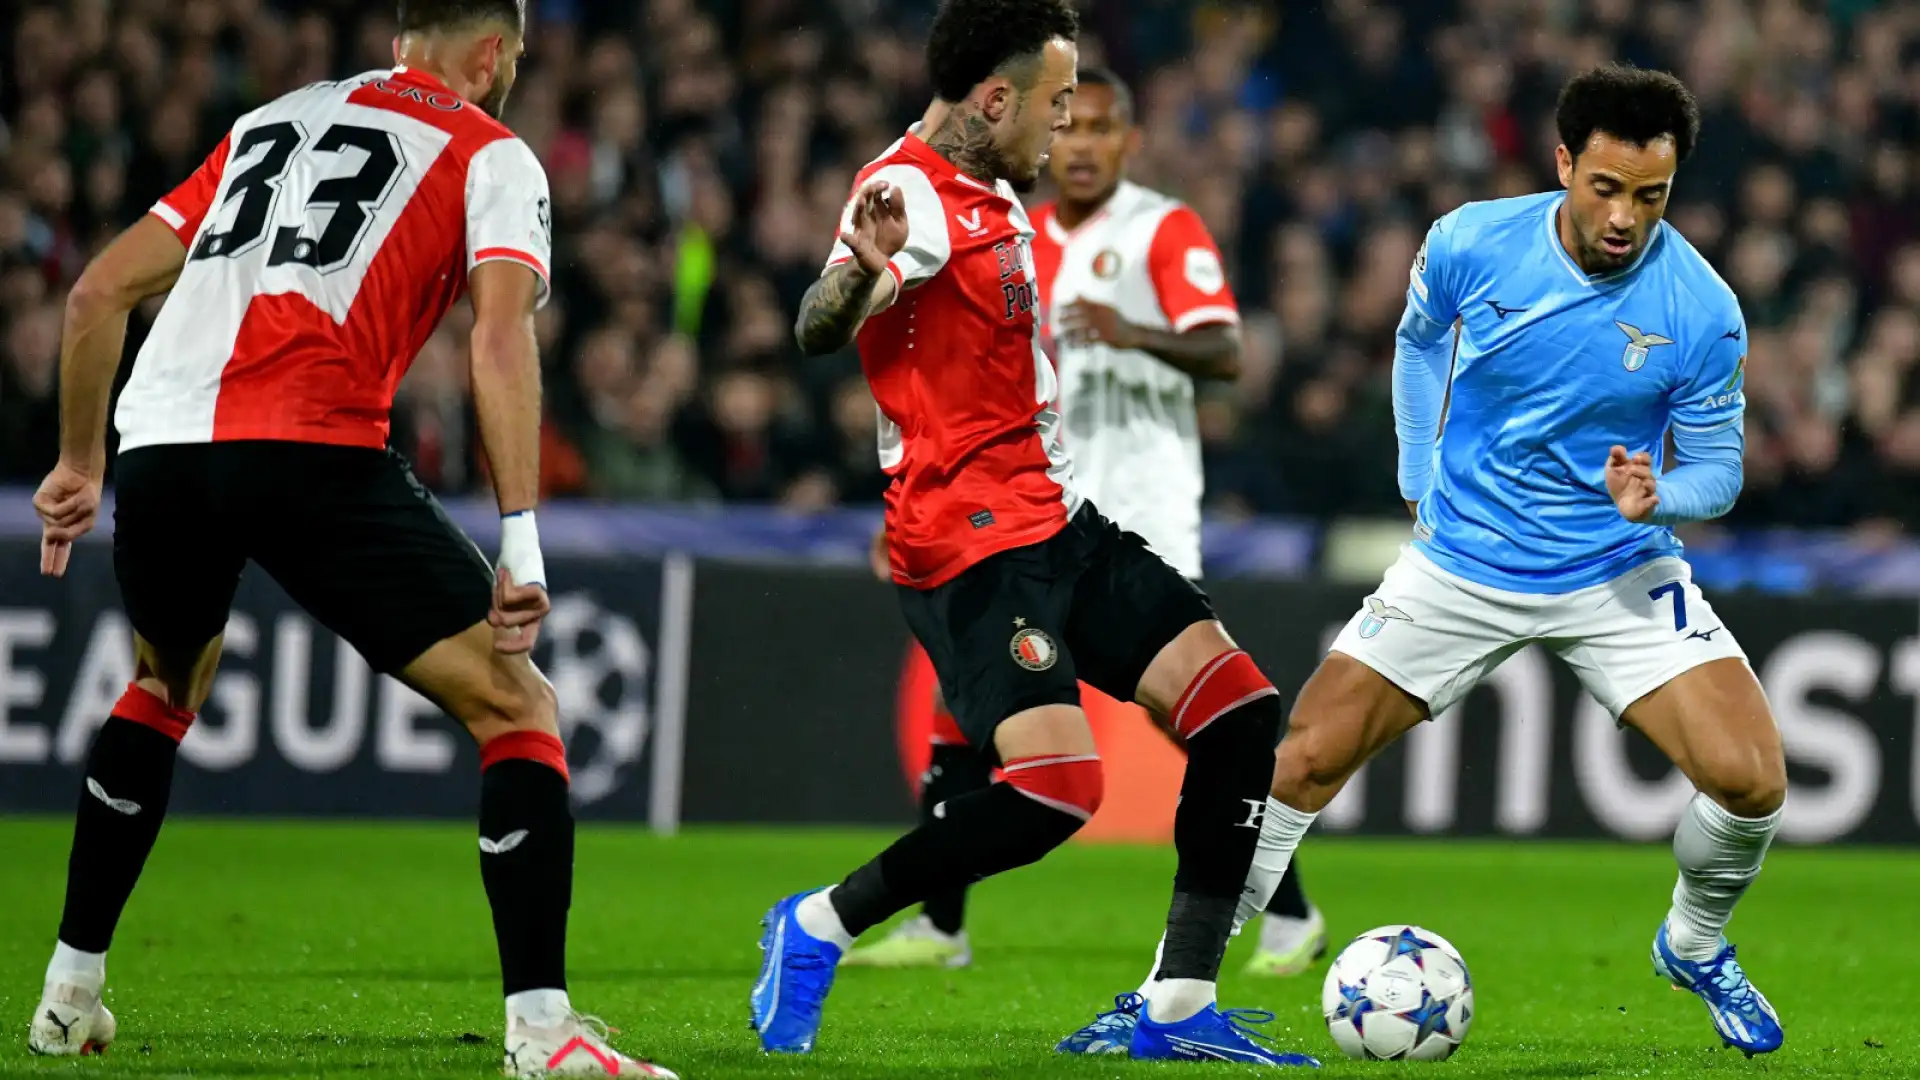 Champions League: Lazio senza scampo, esulta il Feyenoord